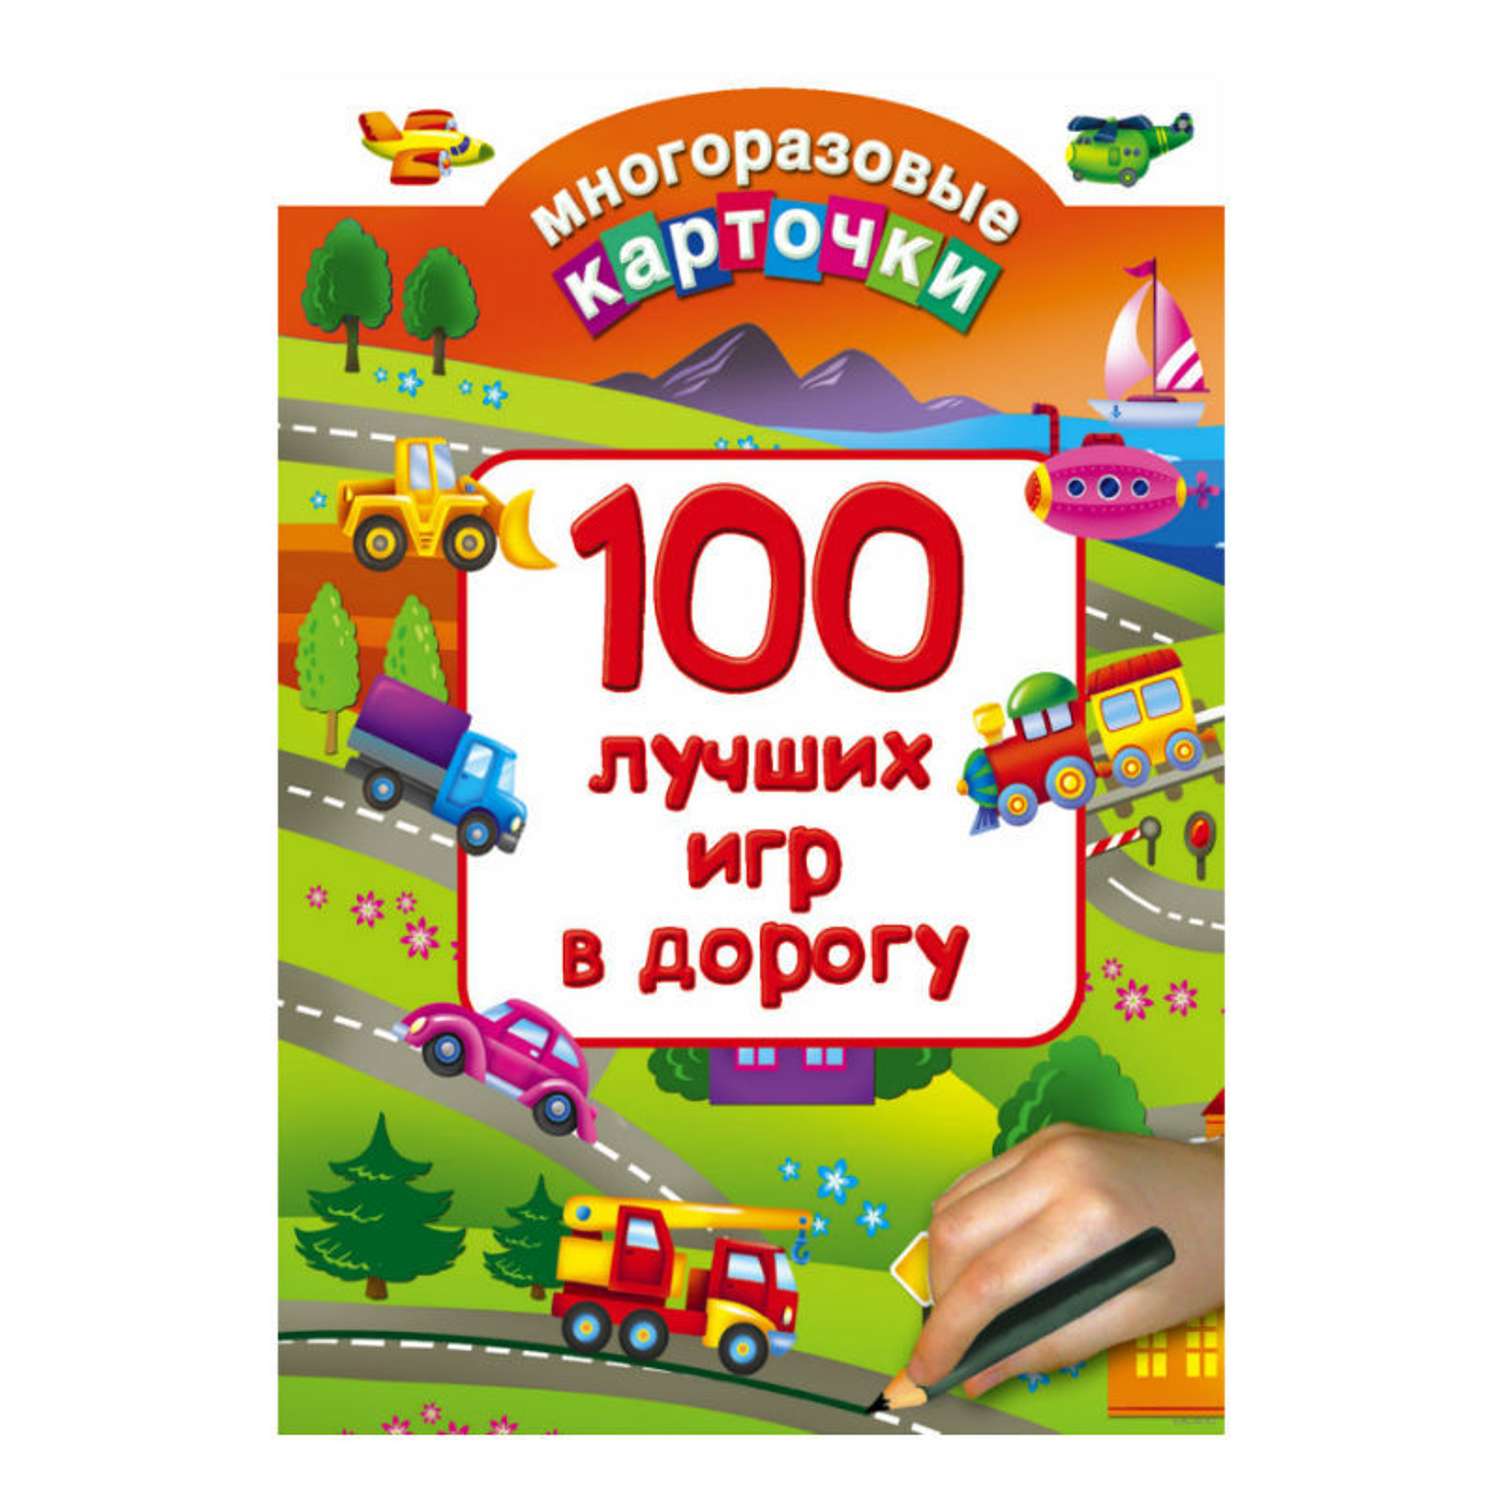 Многоразовые карточки АСТ 100 лучших игр в дорогу - фото 1